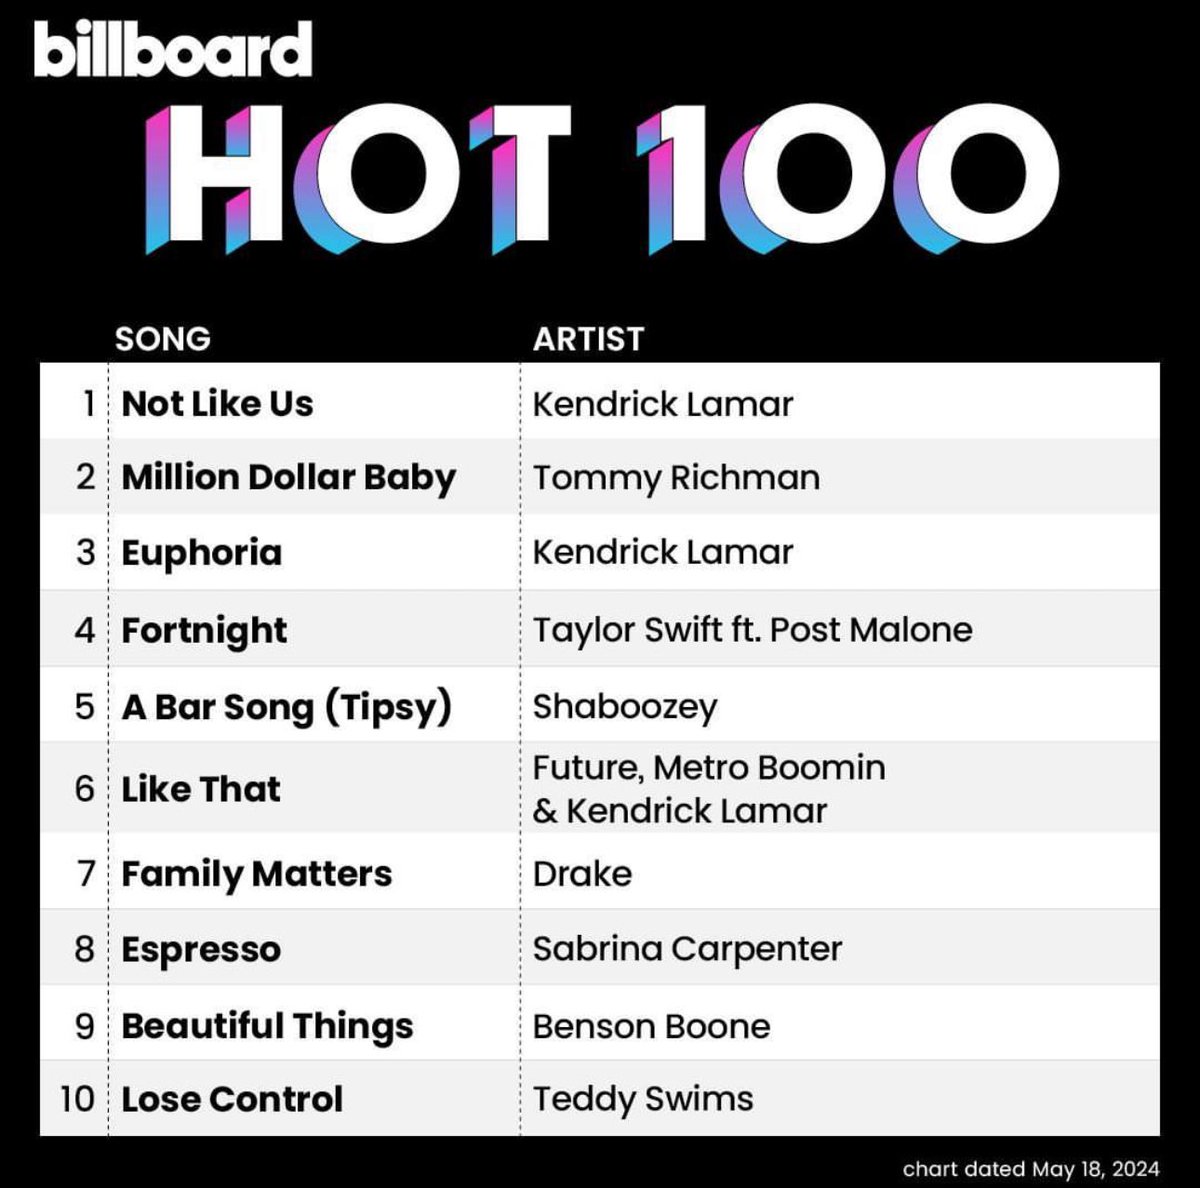 This week's Billboard Hot 100 Top 10!